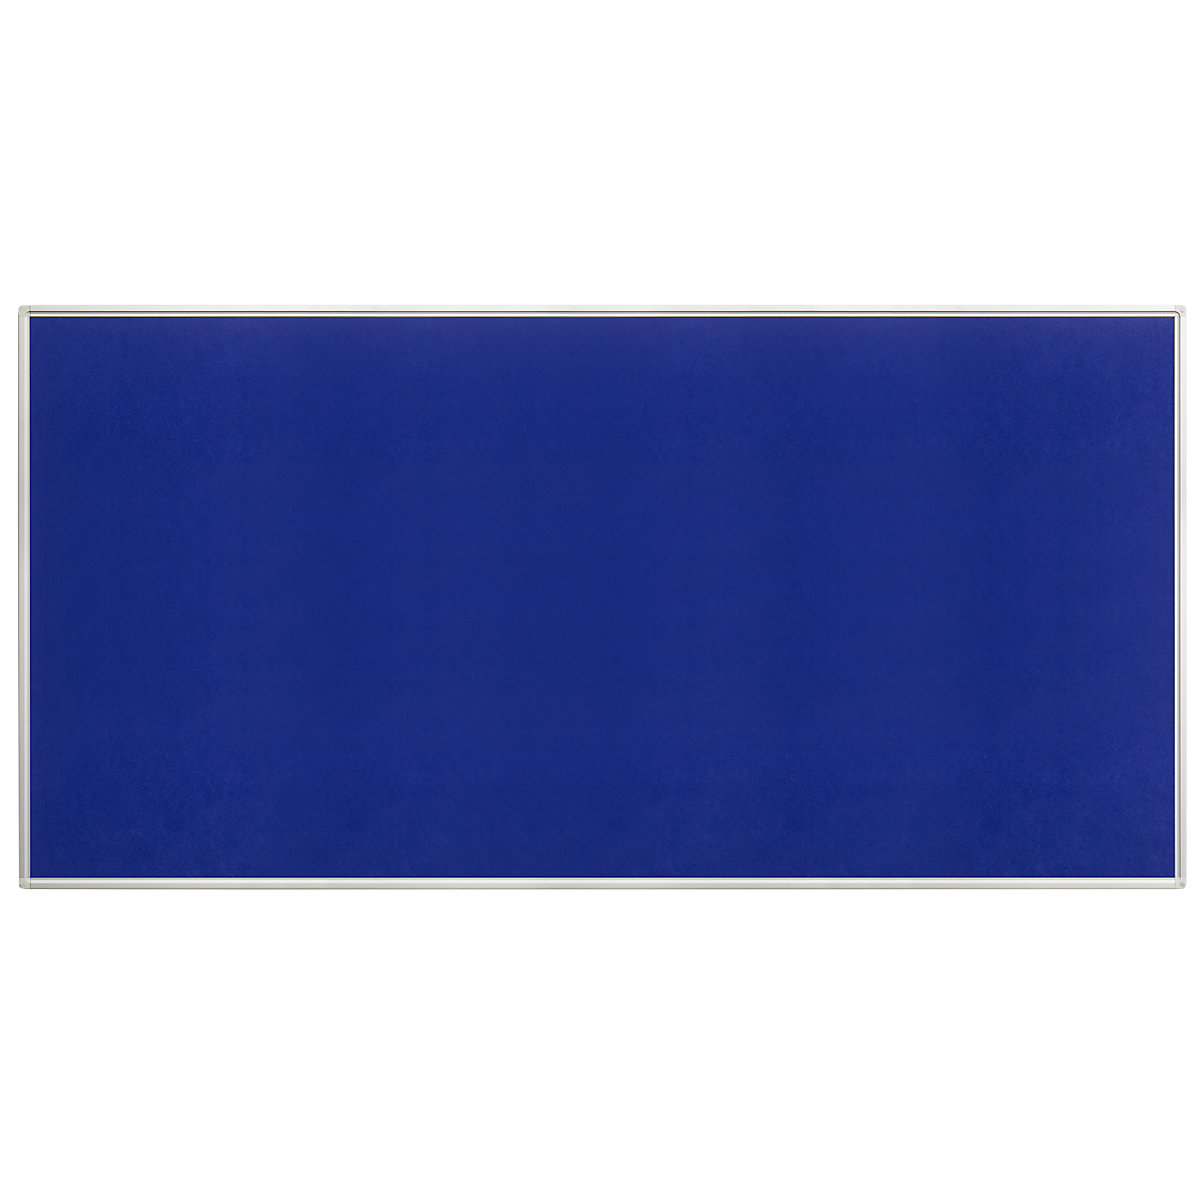 Oglasna ploča, filc, u plavoj boji, ŠxV 2000 x 1000 mm-4